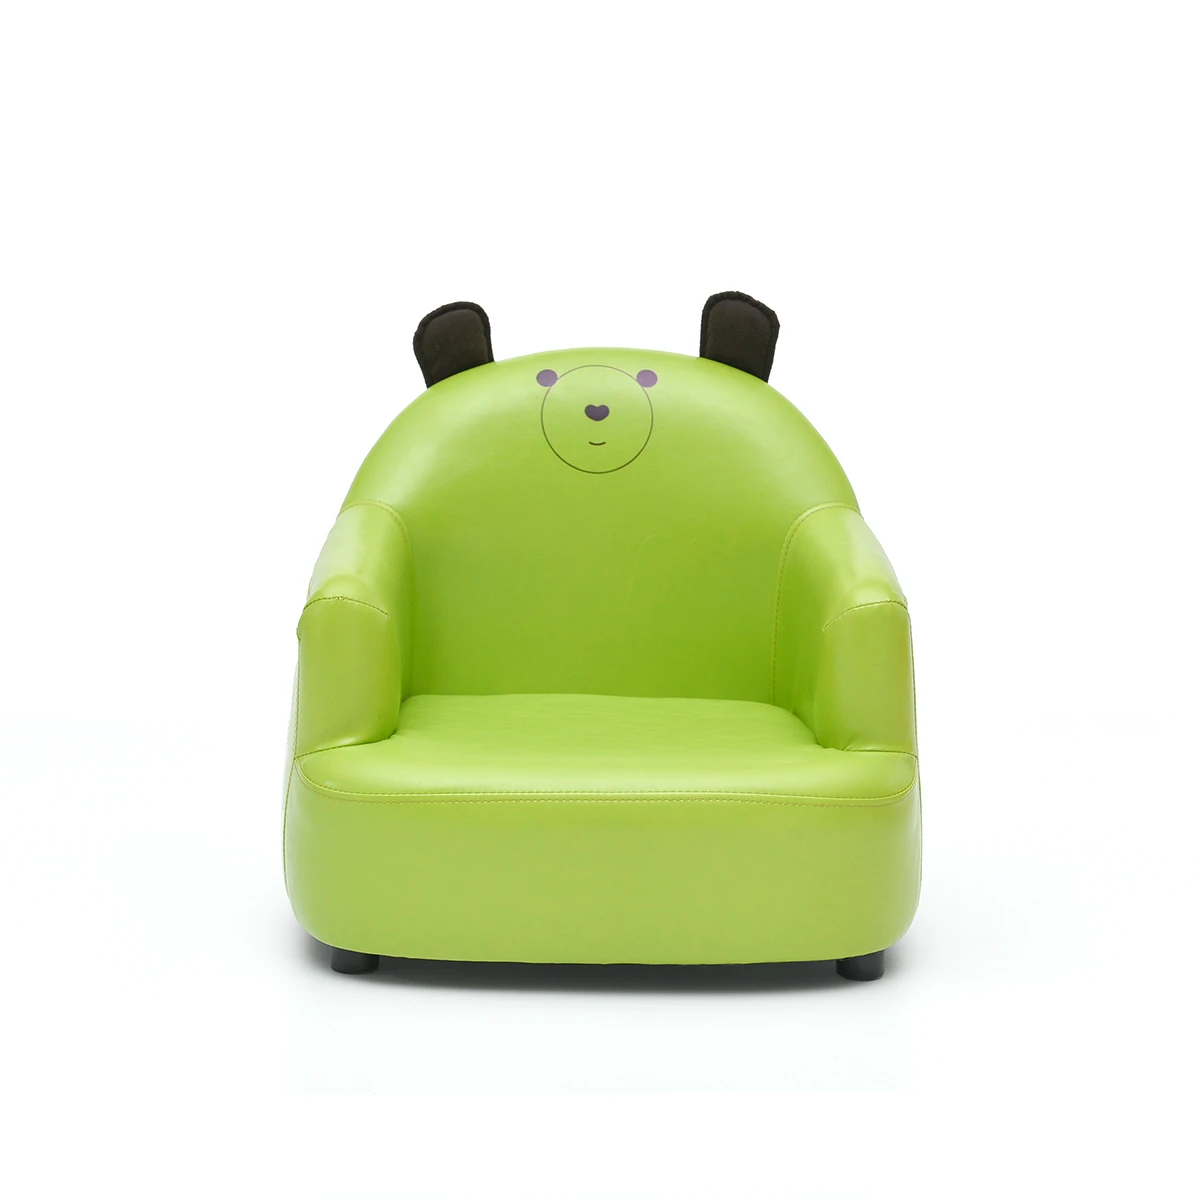 Дети небольшой диван бытовой прекрасный утепленный детский стул моющиеся мини ленивый диван стабильный мультфильм игрушка сиденье мягкой губкой диван легко чистке - Цвет: A2   PU